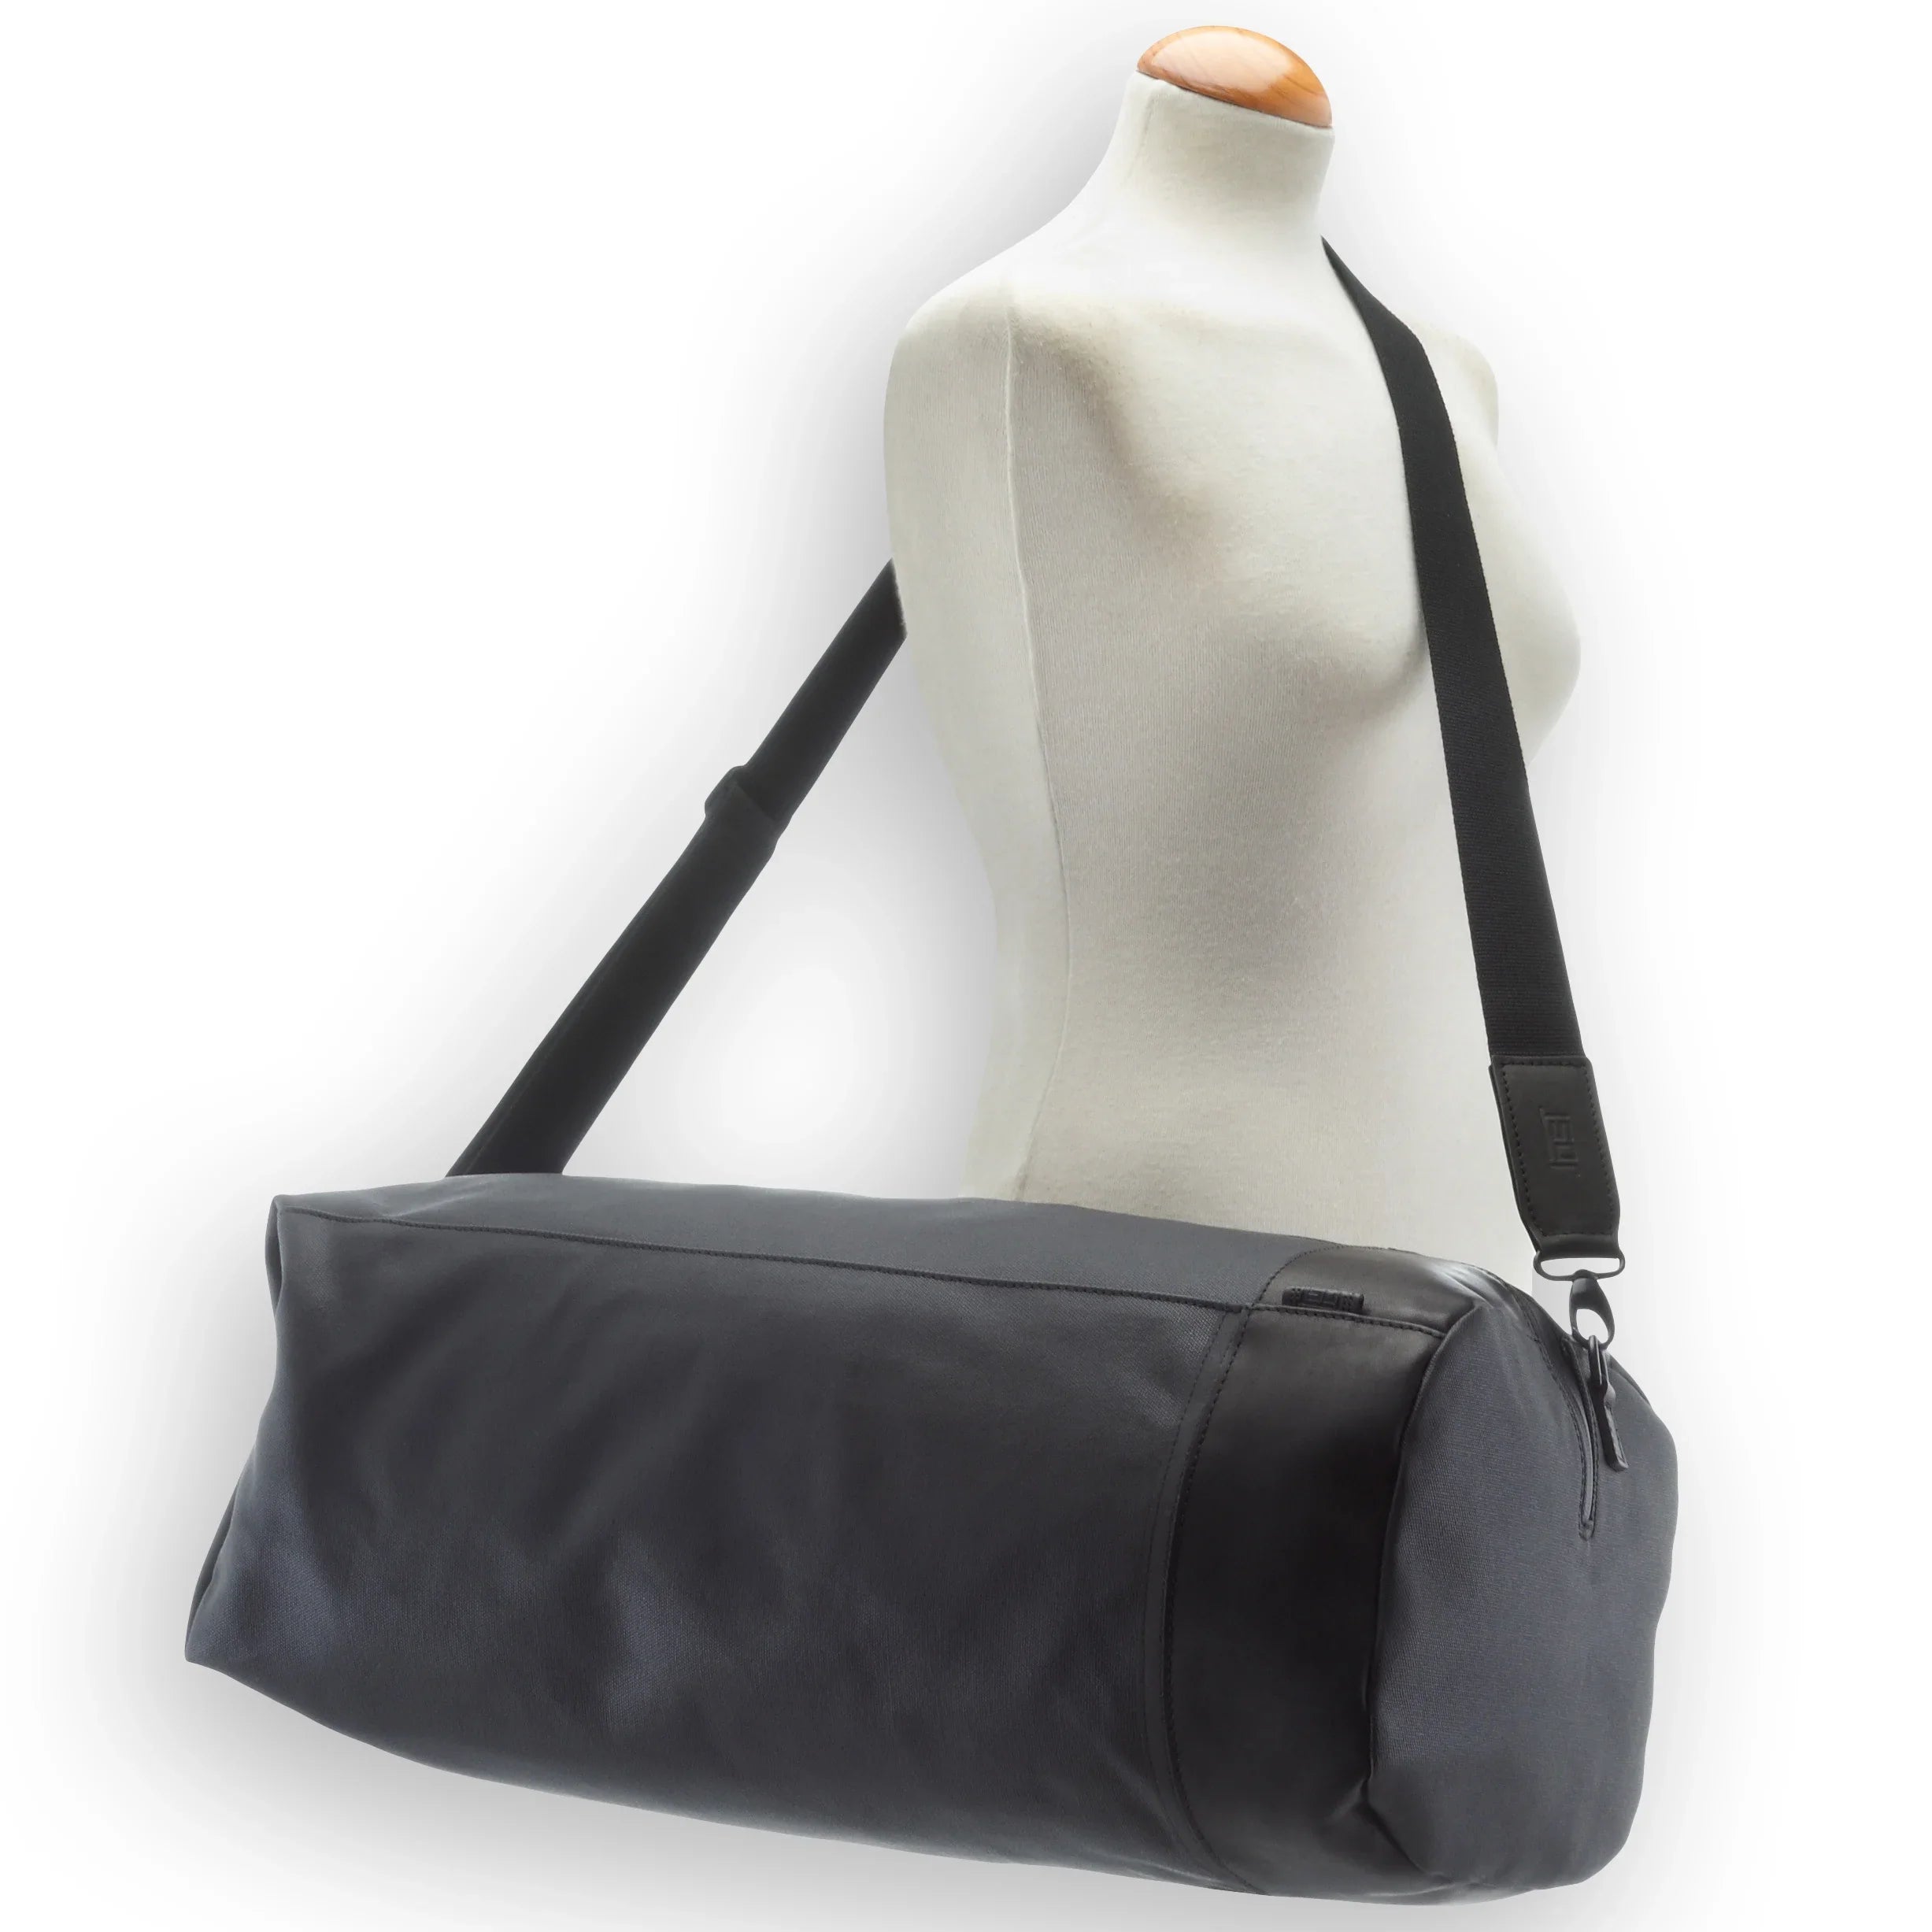 Jost Billund duffel bag 54 cm - black